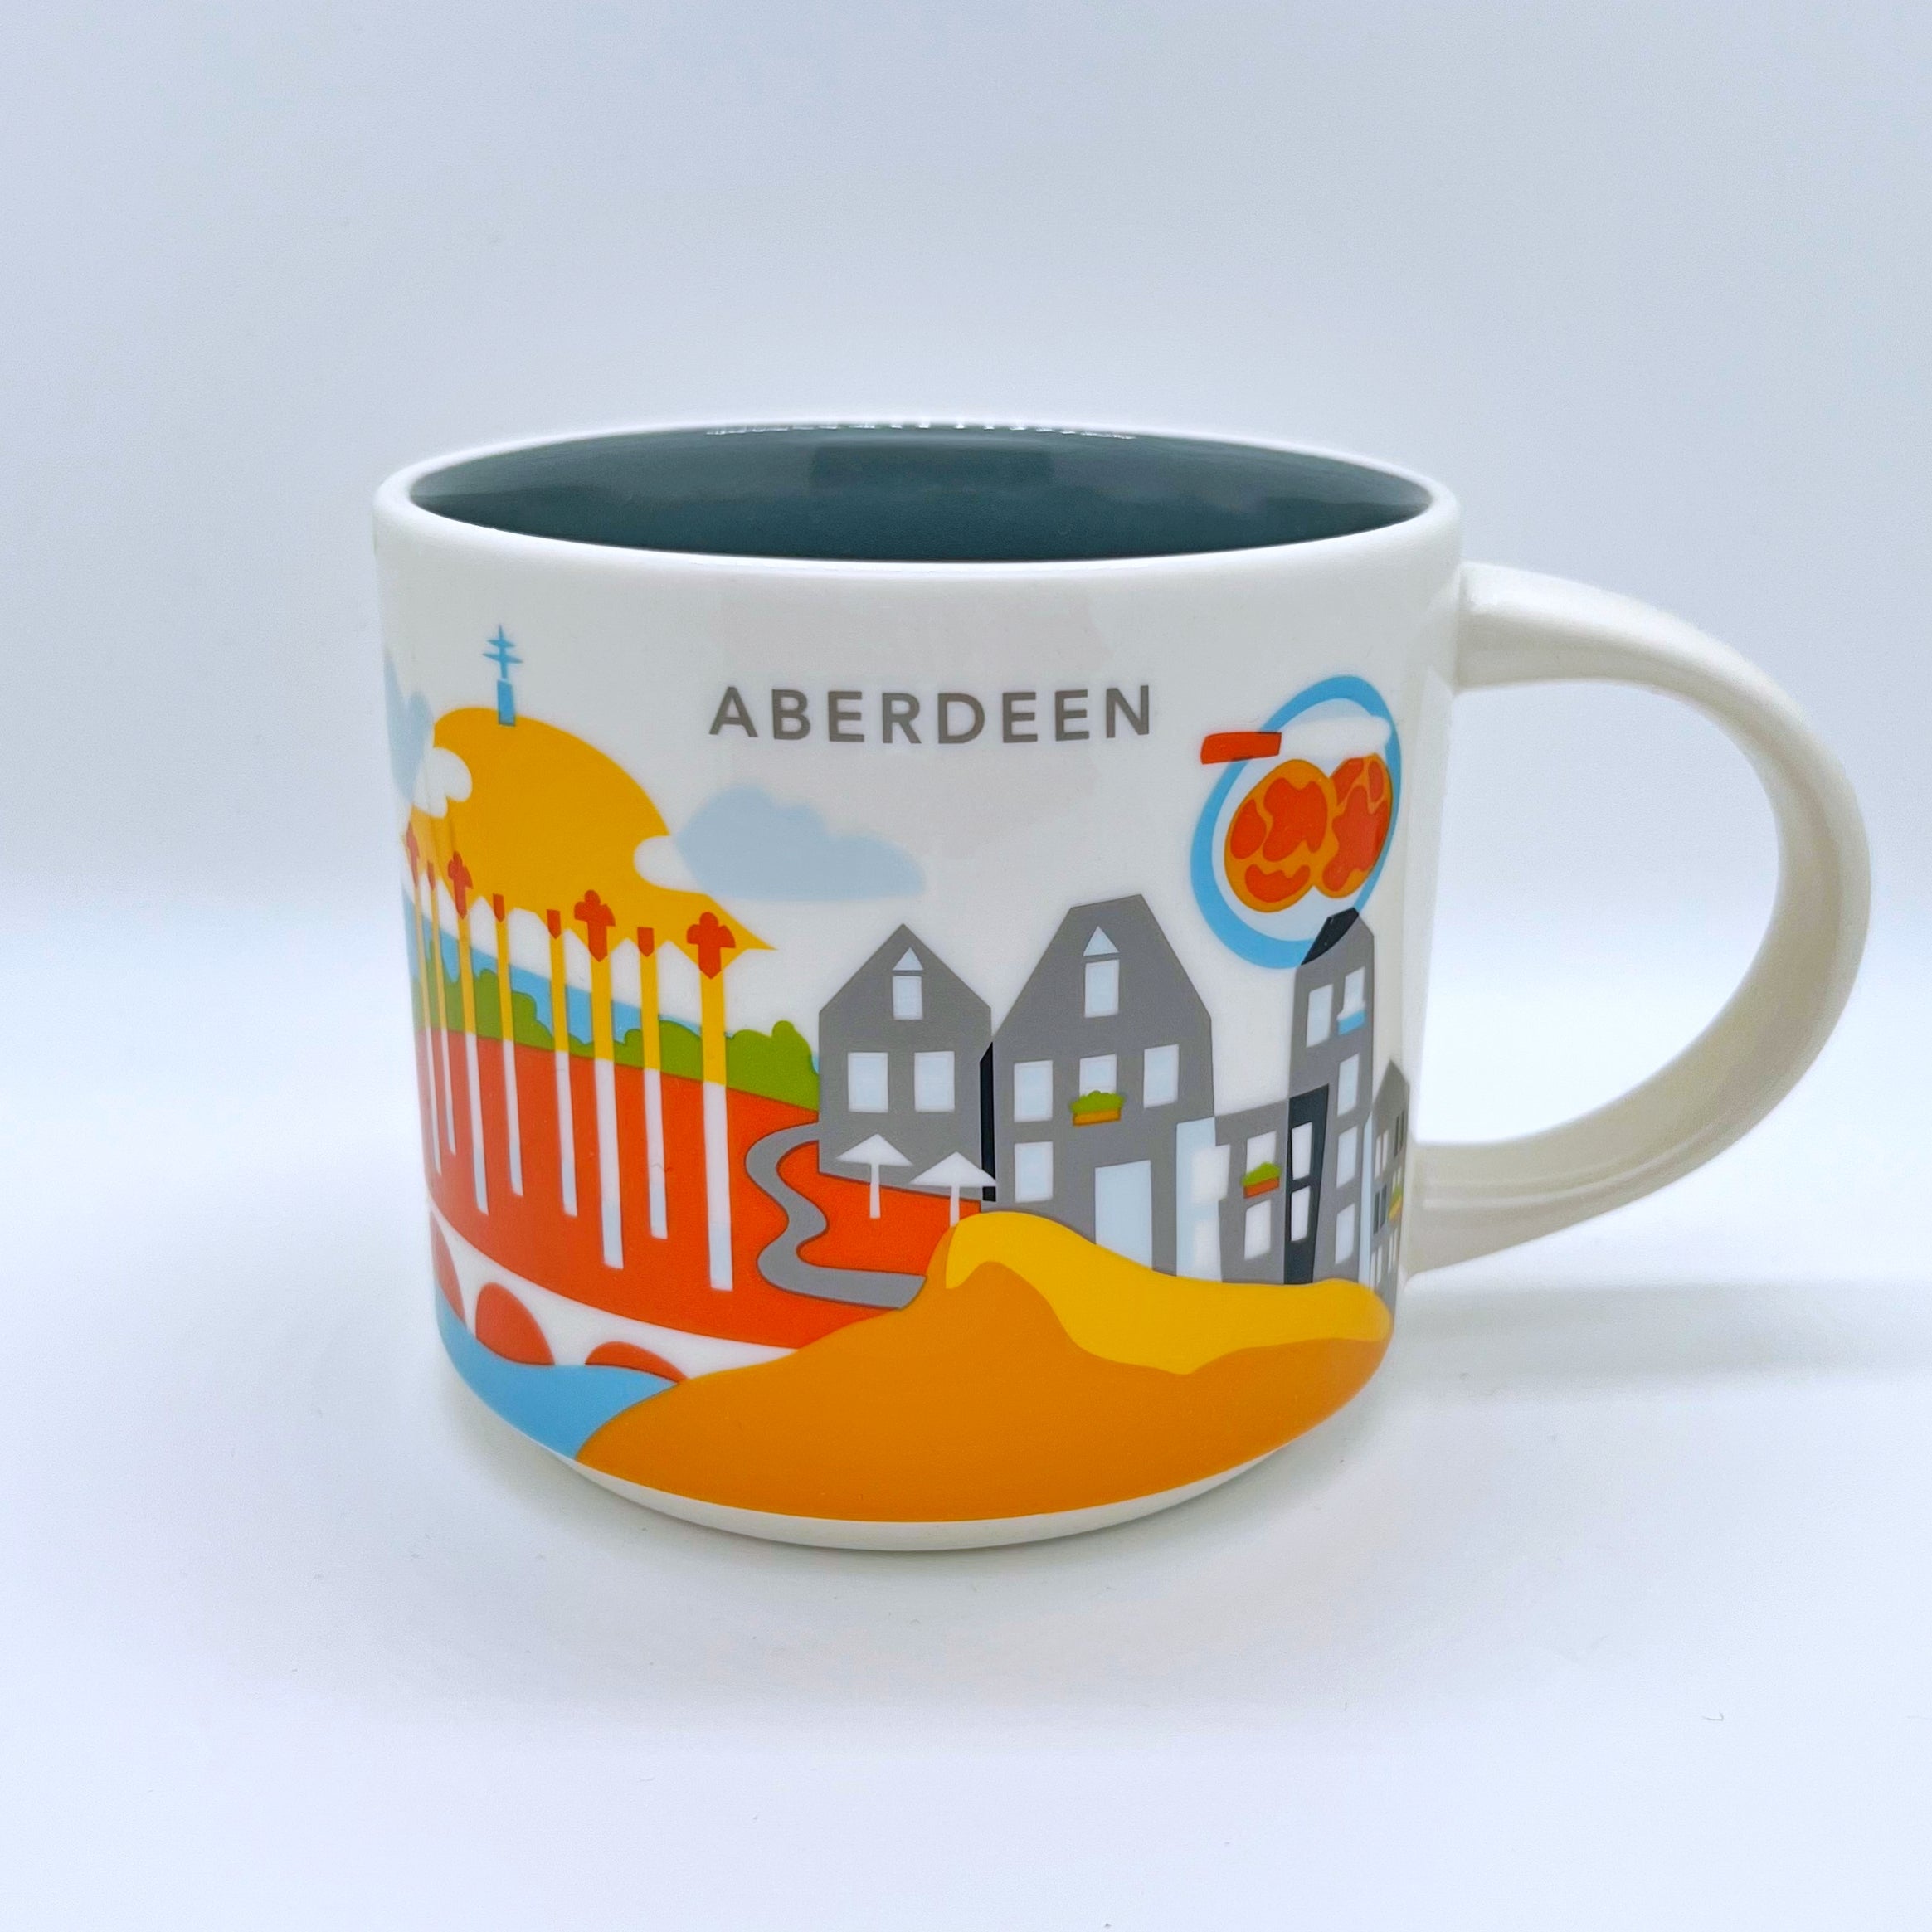 Kaffee Tee und Cappuccino Tasse von Starbucks mit gemalten Bildern aus der Stadt Aberdeen